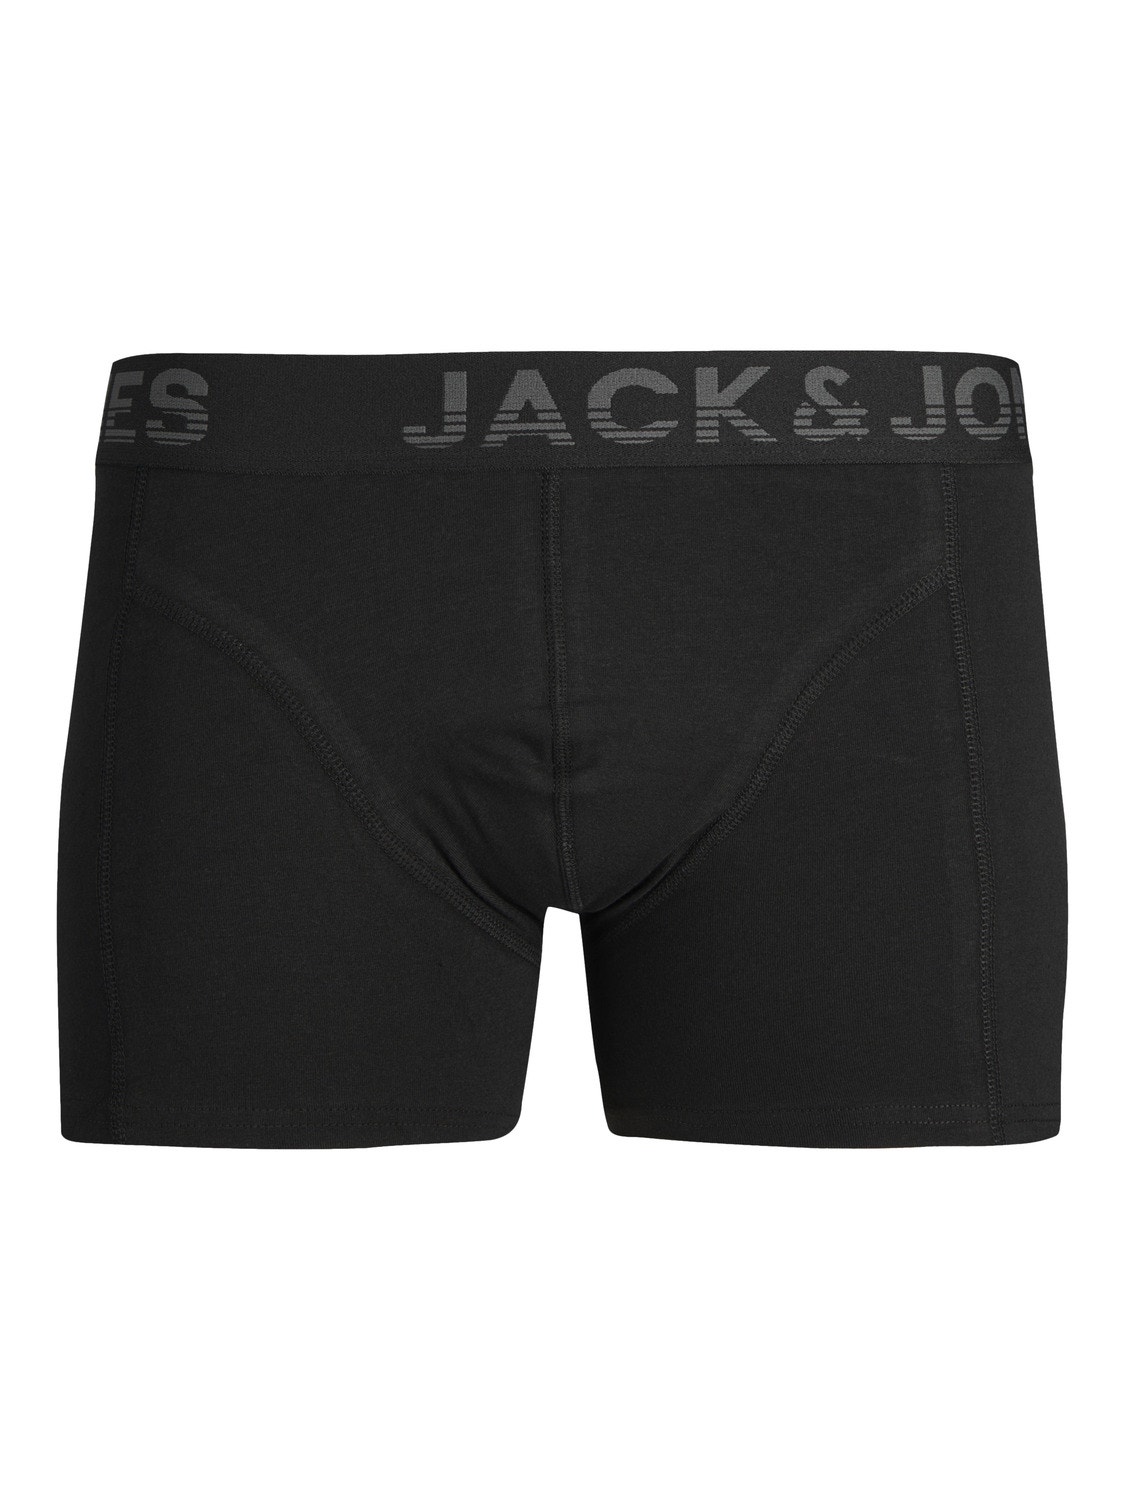 Jack & Jones 3-pakuotės Trumpikės -Black - 12250607